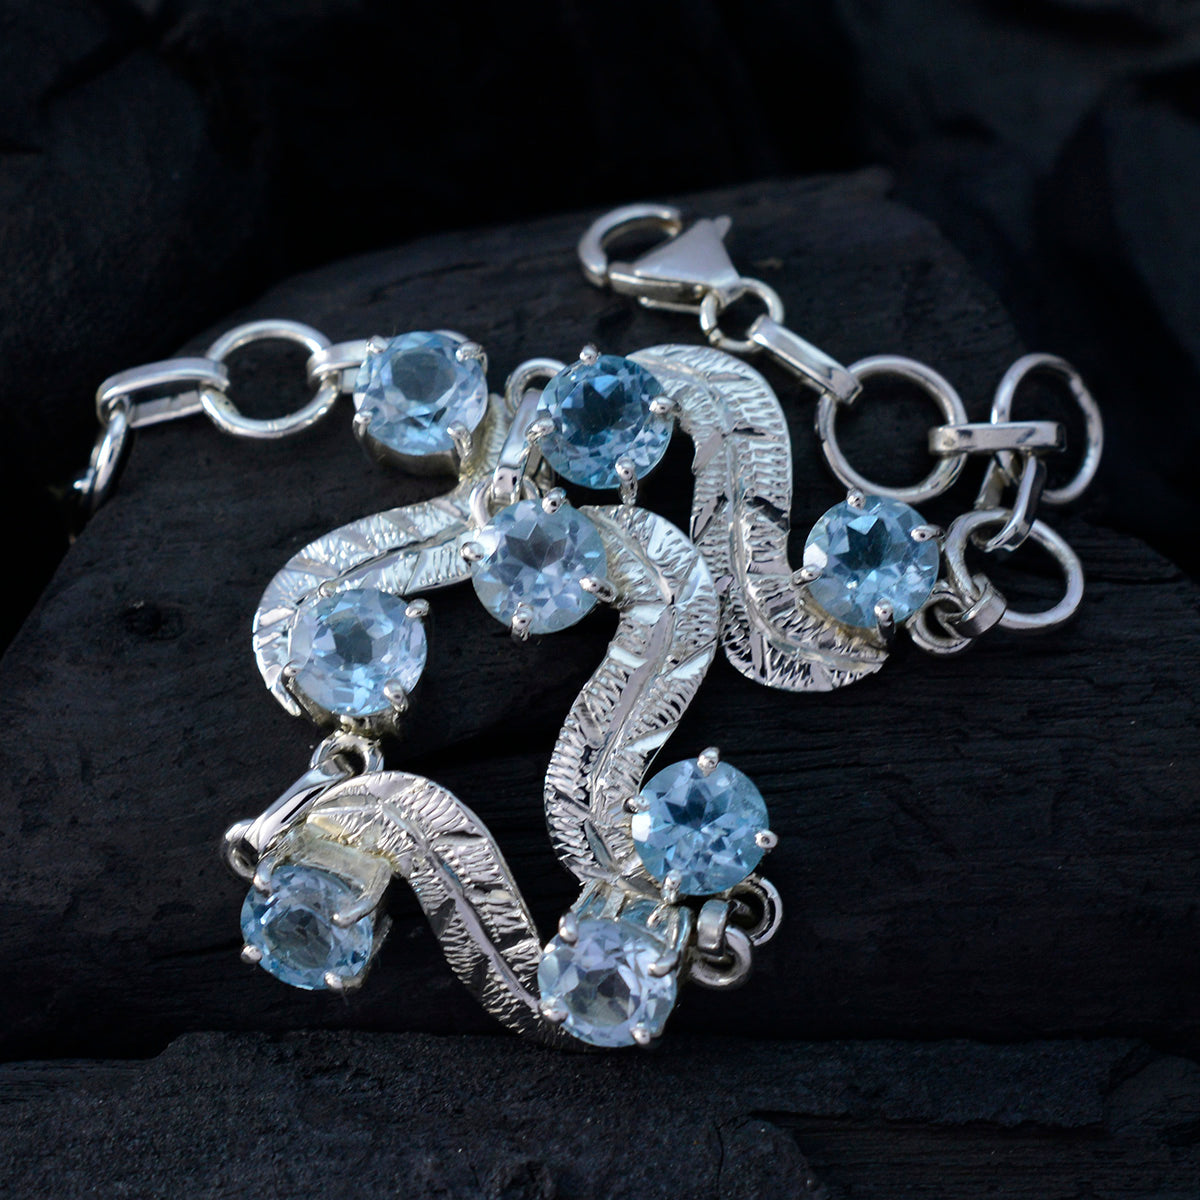 Riyo bezauberndes 925er Sterlingsilber-Armband für Damen, blaues Topas-Armband, Krappenfassung-Armband mit Fischhaken-Gliederarmband, L-Größe 15,2–21,6 cm.